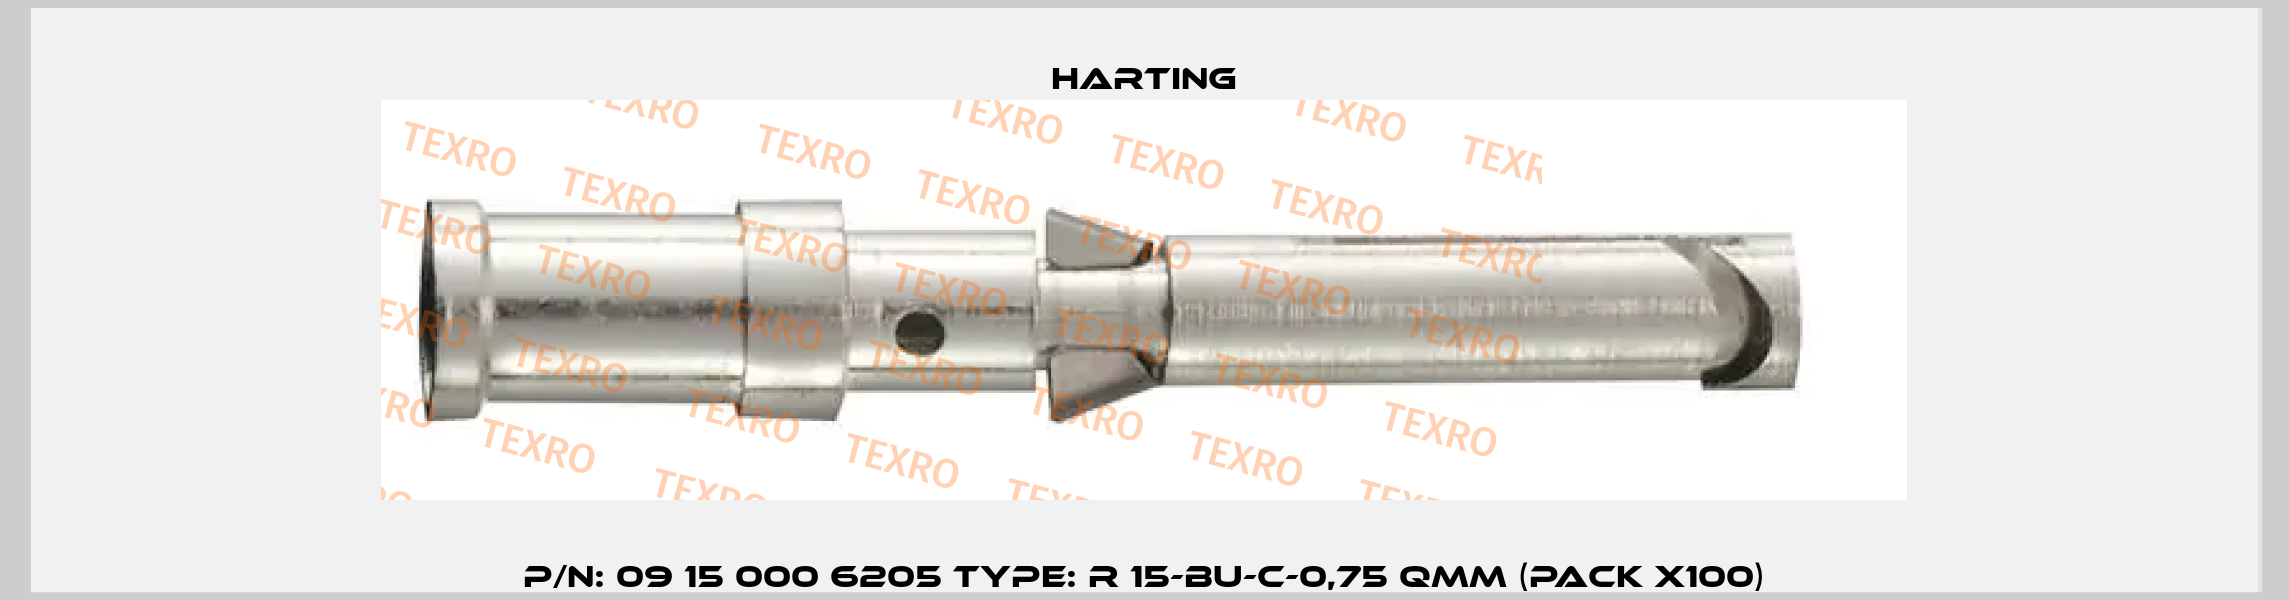 P/N: 09 15 000 6205 Type: R 15-BU-C-0,75 QMM (pack x100) Harting